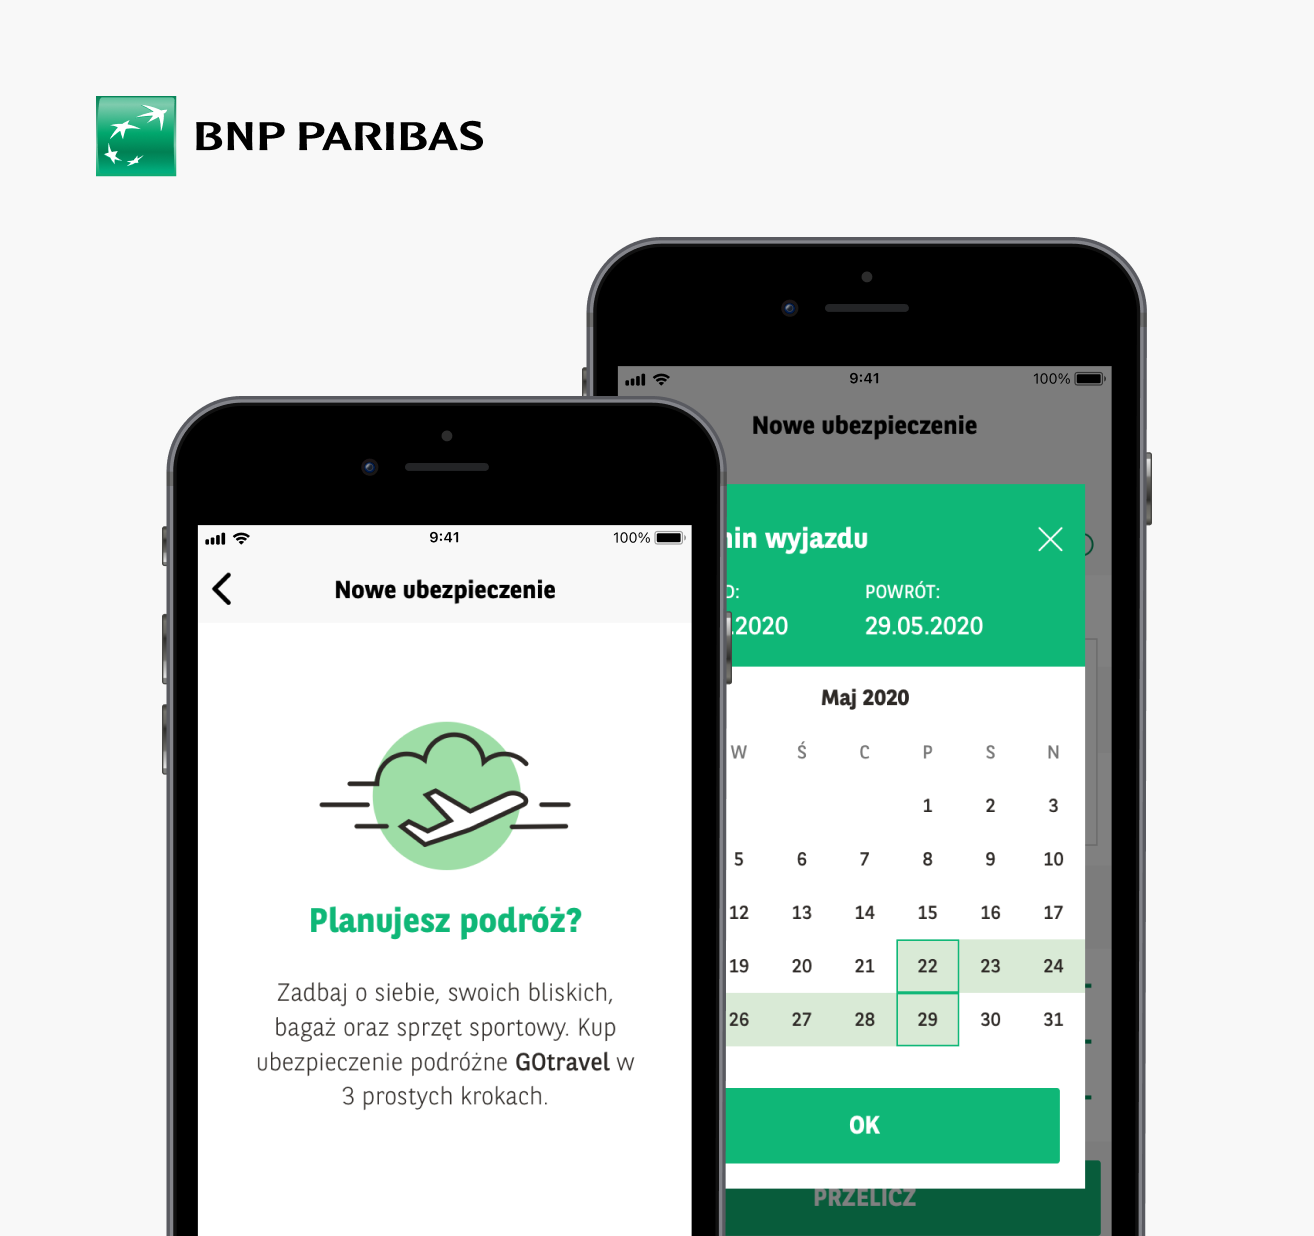 BNP Paribas - Miquido Portfolio